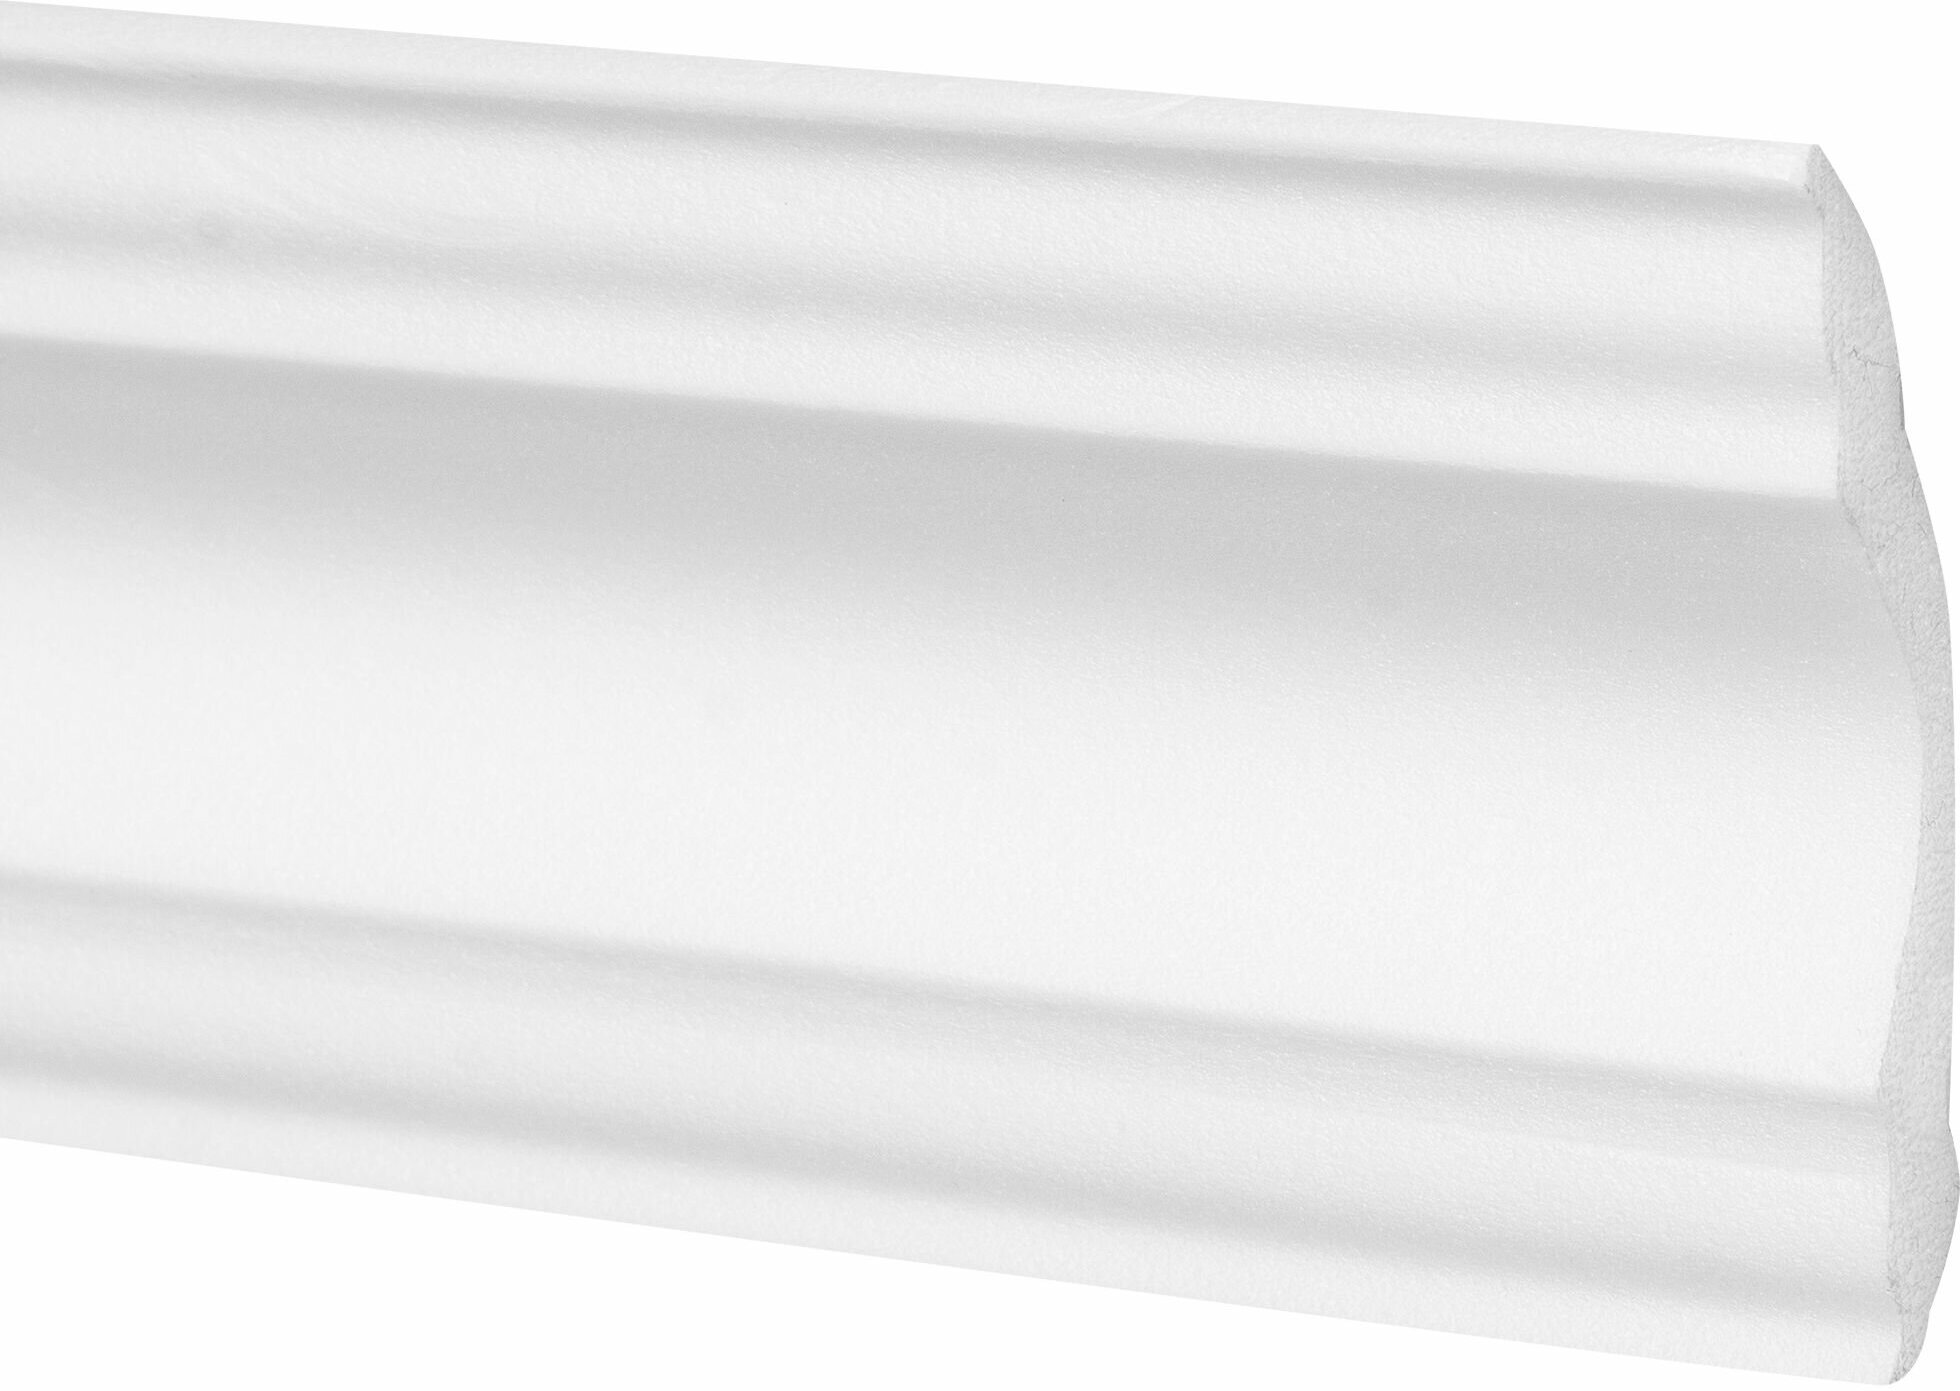 Плинтус потолочный экструдированный полистирол Inspire 07006А белый 50х50х2000 мм